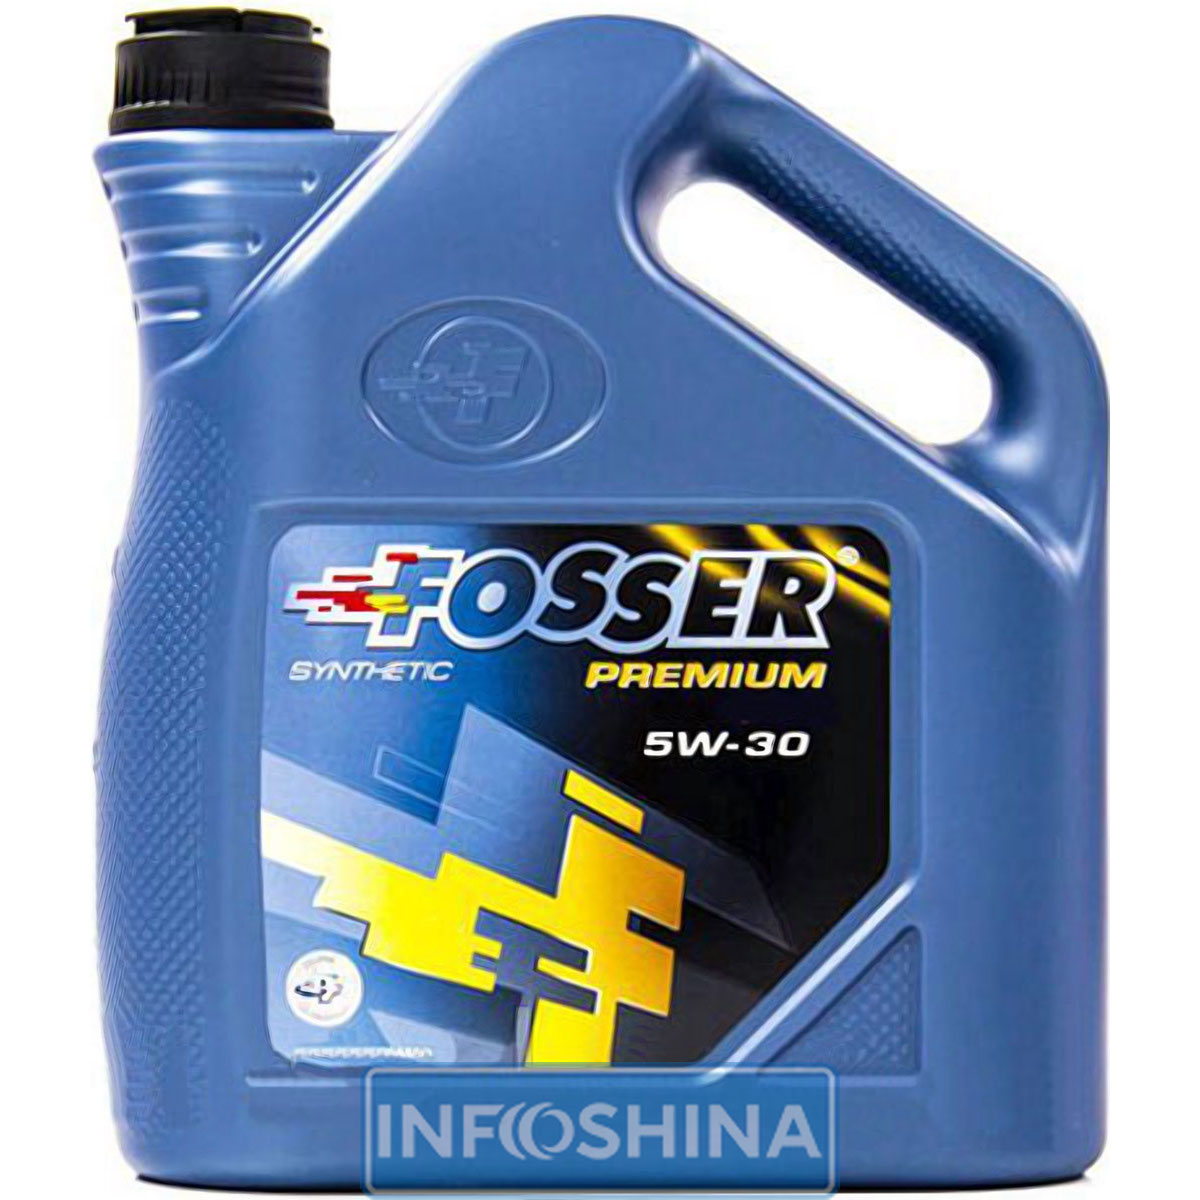 Fosser Premium Special R 5W-30